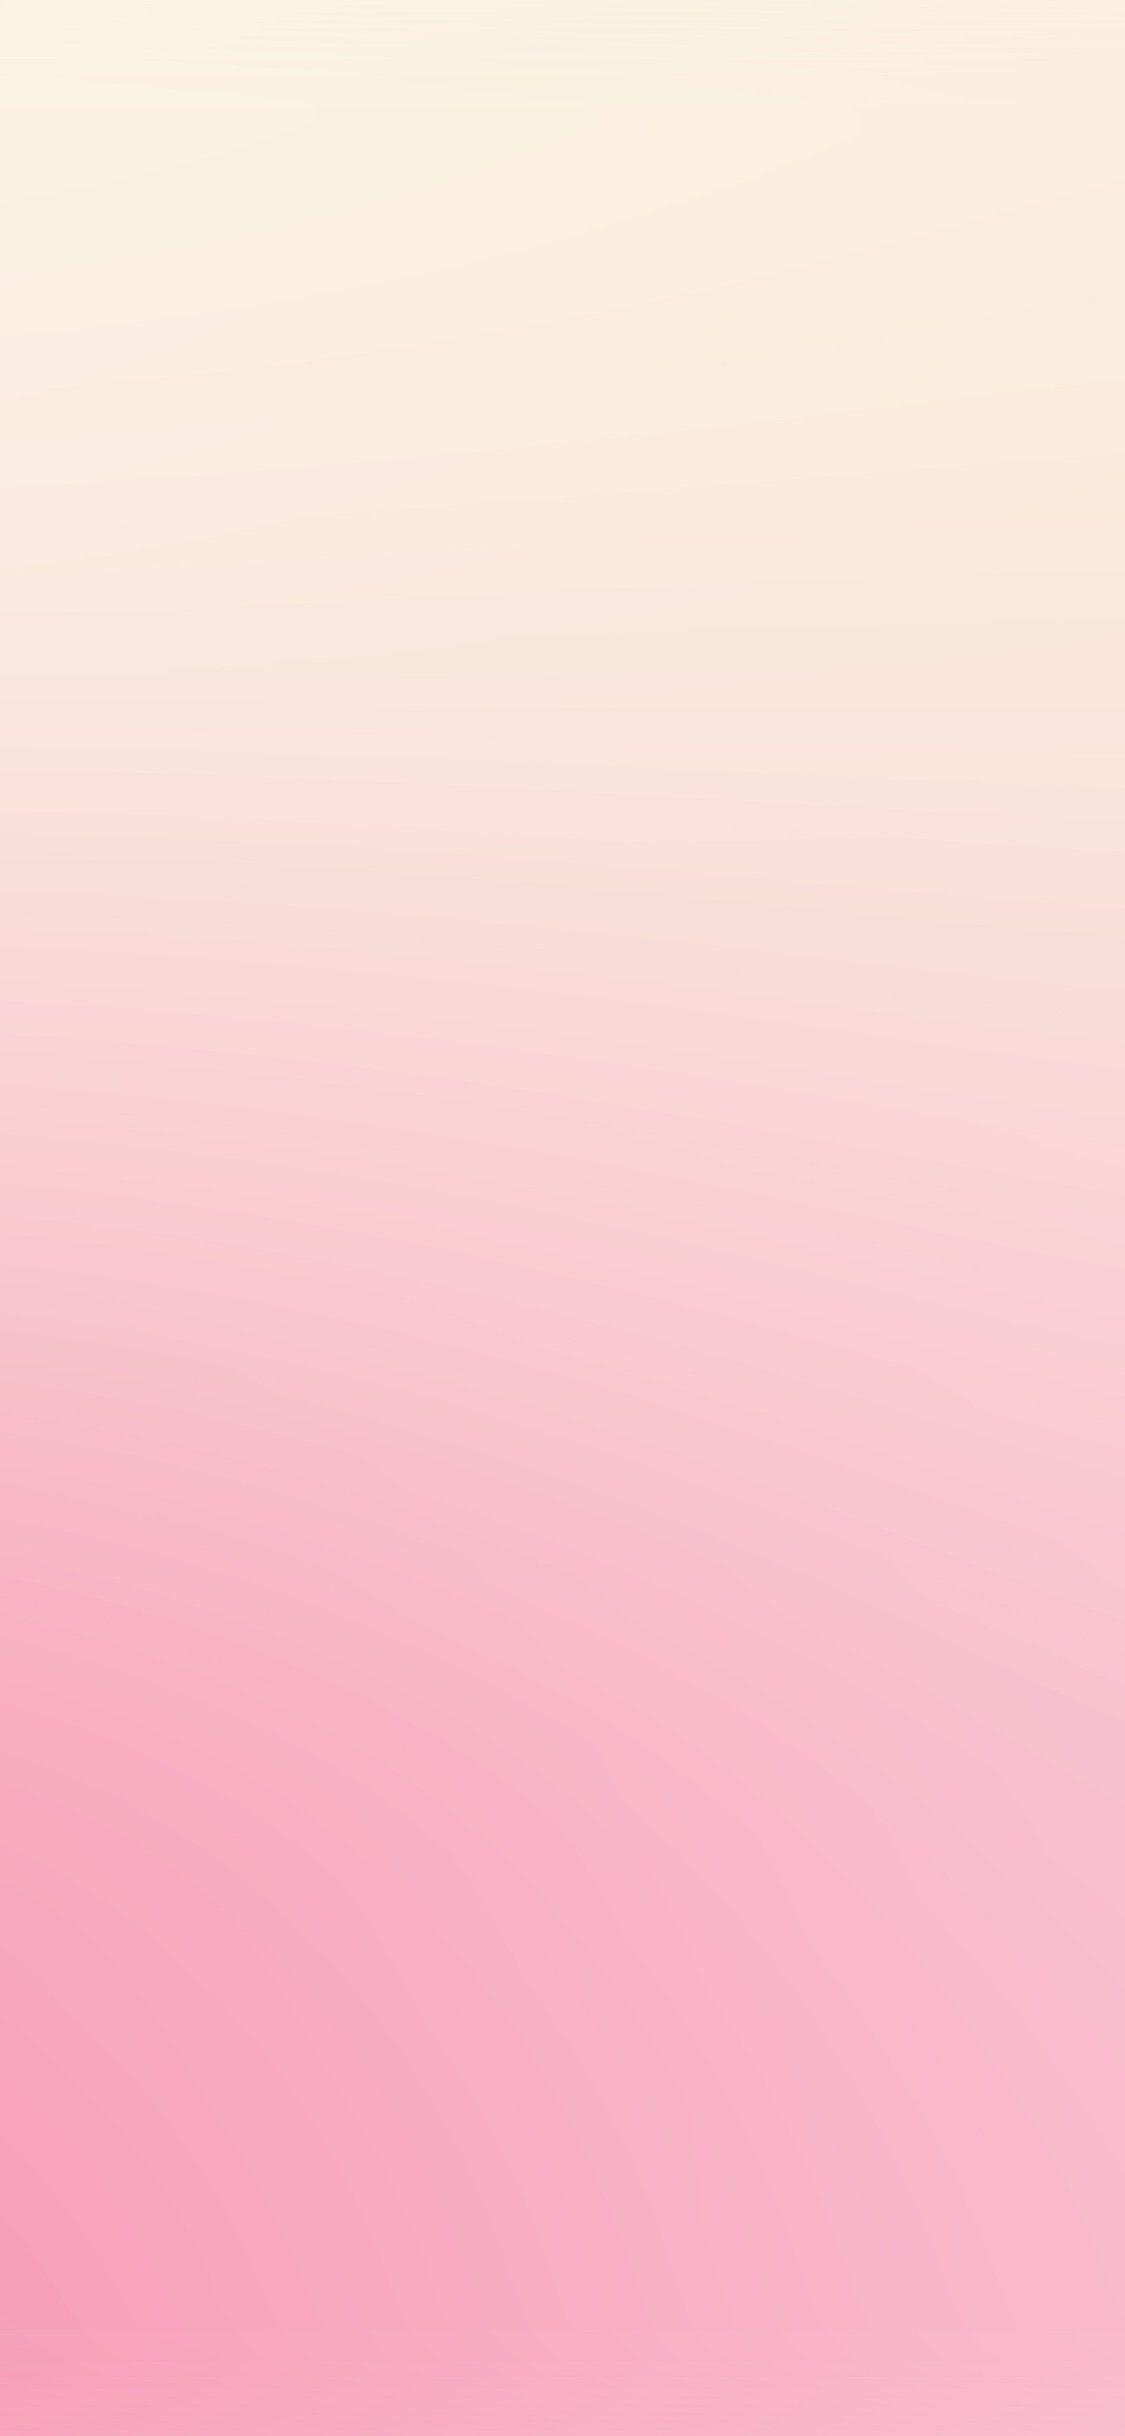 1125x2436 iPhone X - Hình nền màu hồng dễ thương iPhone X - Hình nền HD